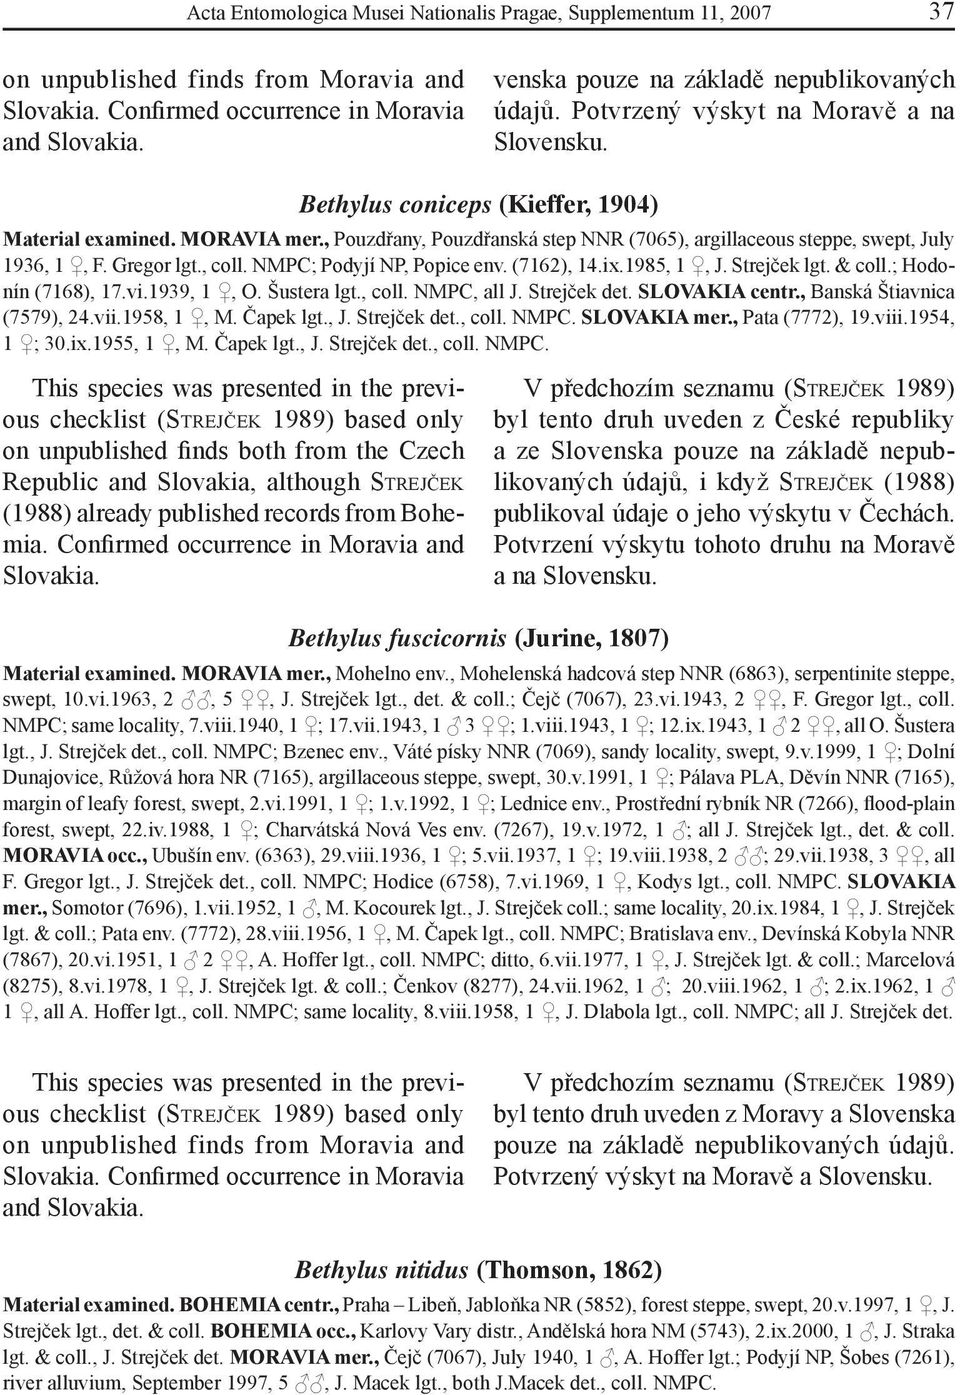 , Pouzdřany, Pouzdřanská step NNR (7065), argillaceous steppe, swept, July 1936, 1, F. Gregor lgt., coll. NMPC; Podyjí NP, Popice env. (7162), 14.ix.1985, 1, J. Strejček lgt. & coll.